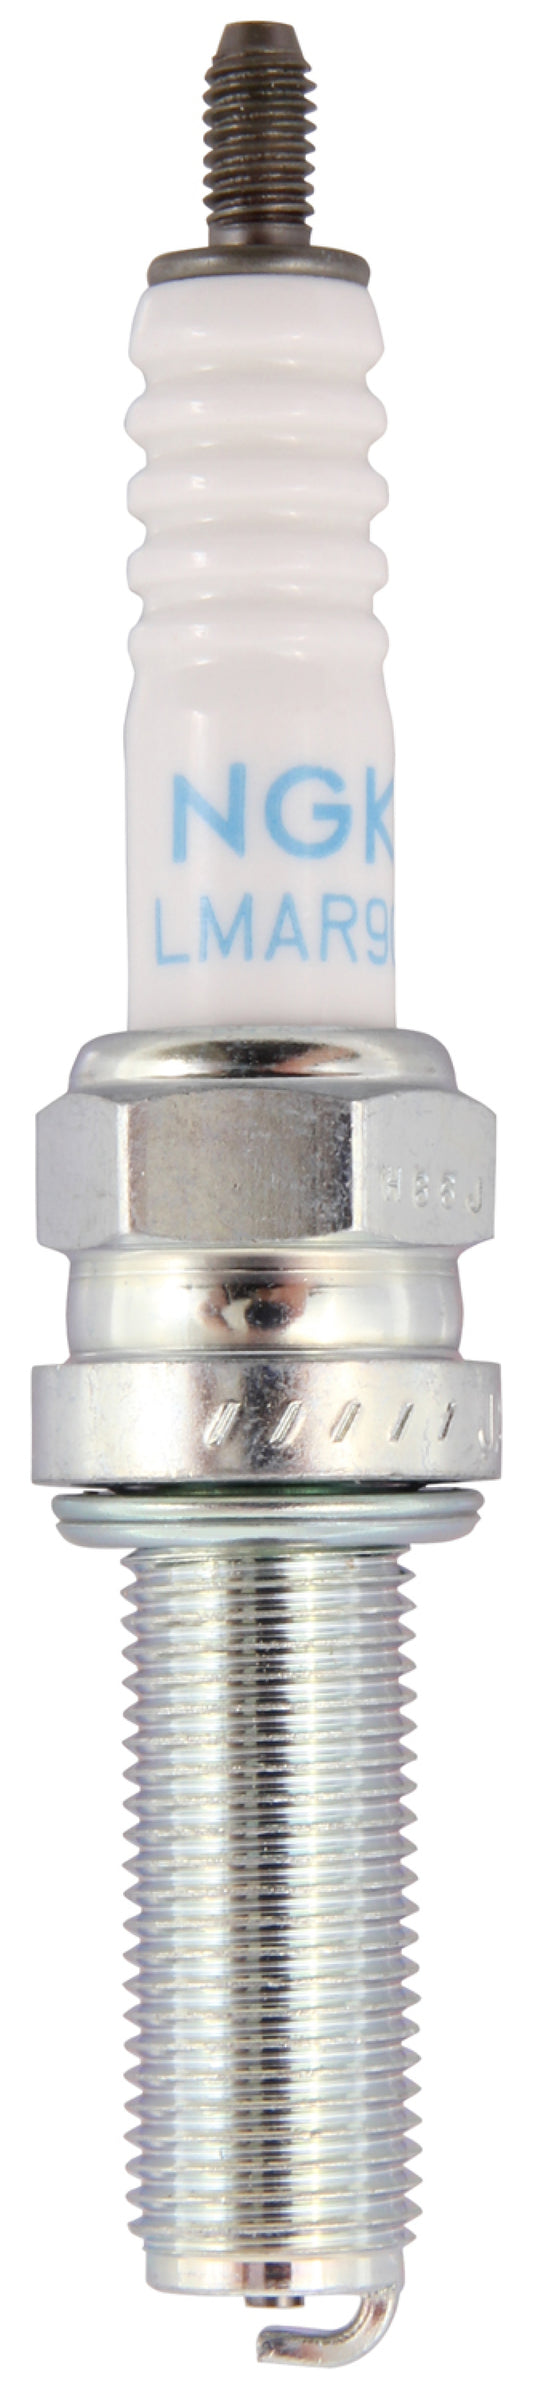 NGK Standard Spark Plug Box of 4 (LMAR9G)